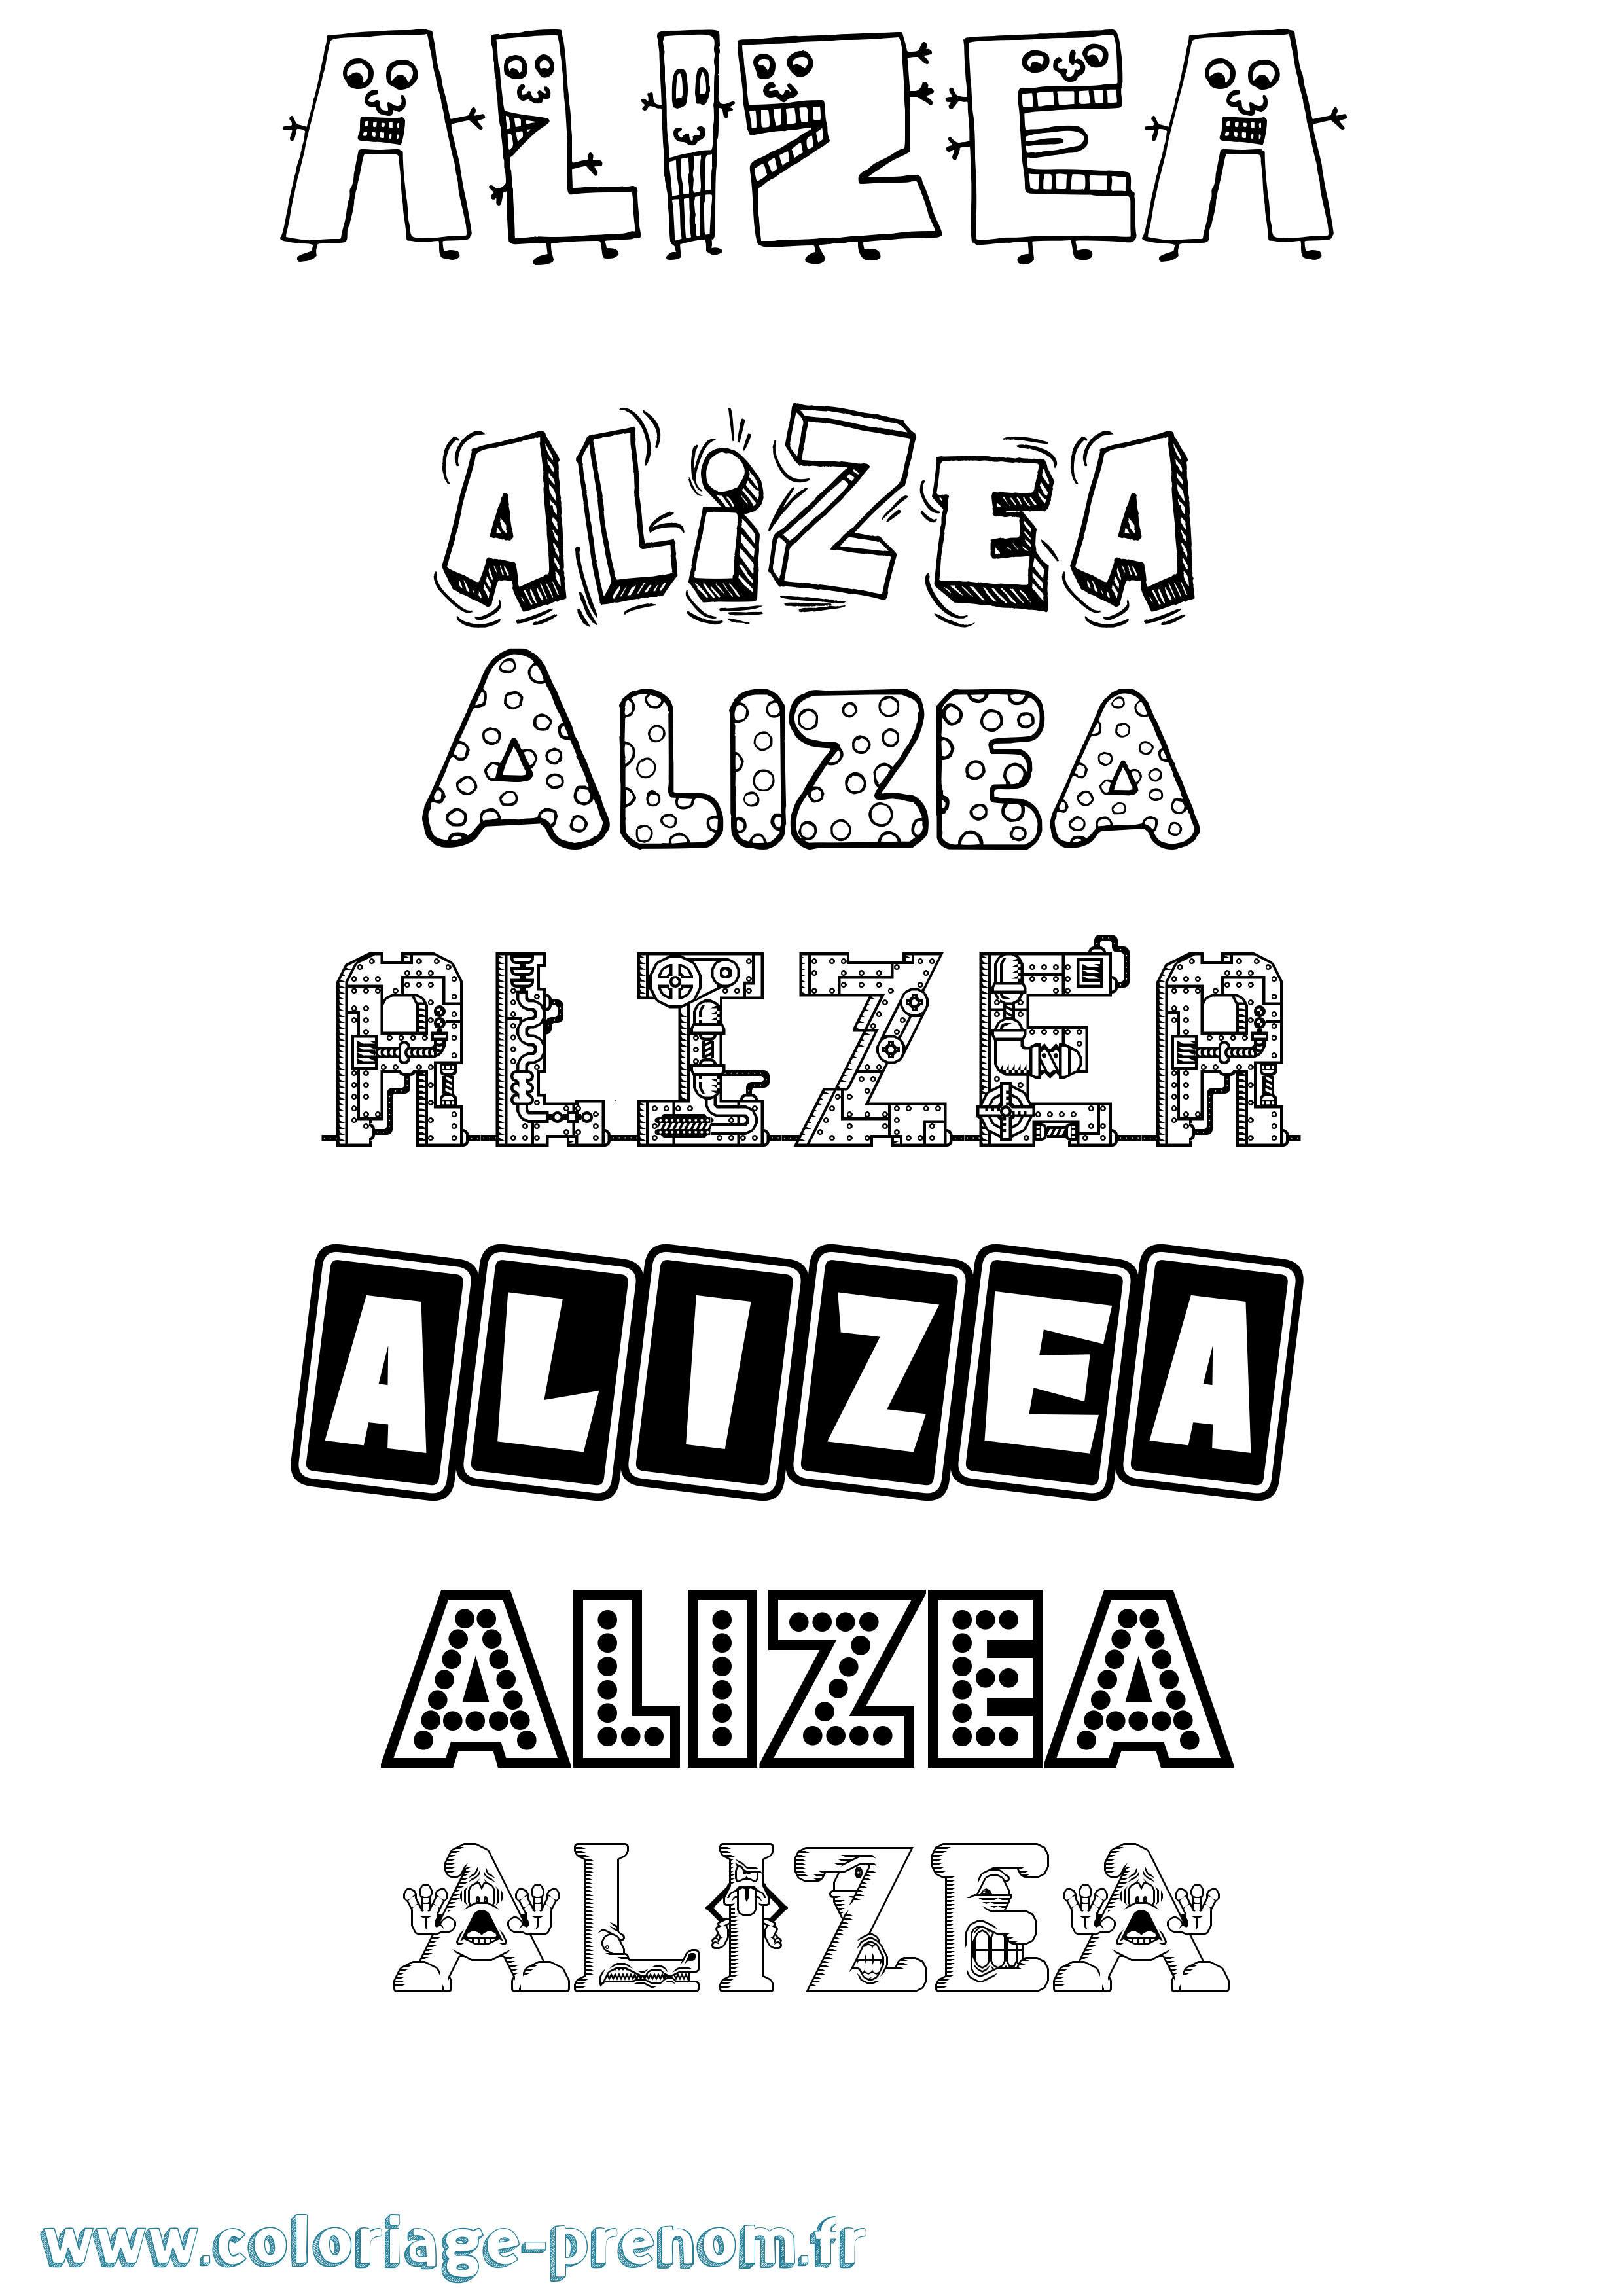 Coloriage prénom Alizea Fun